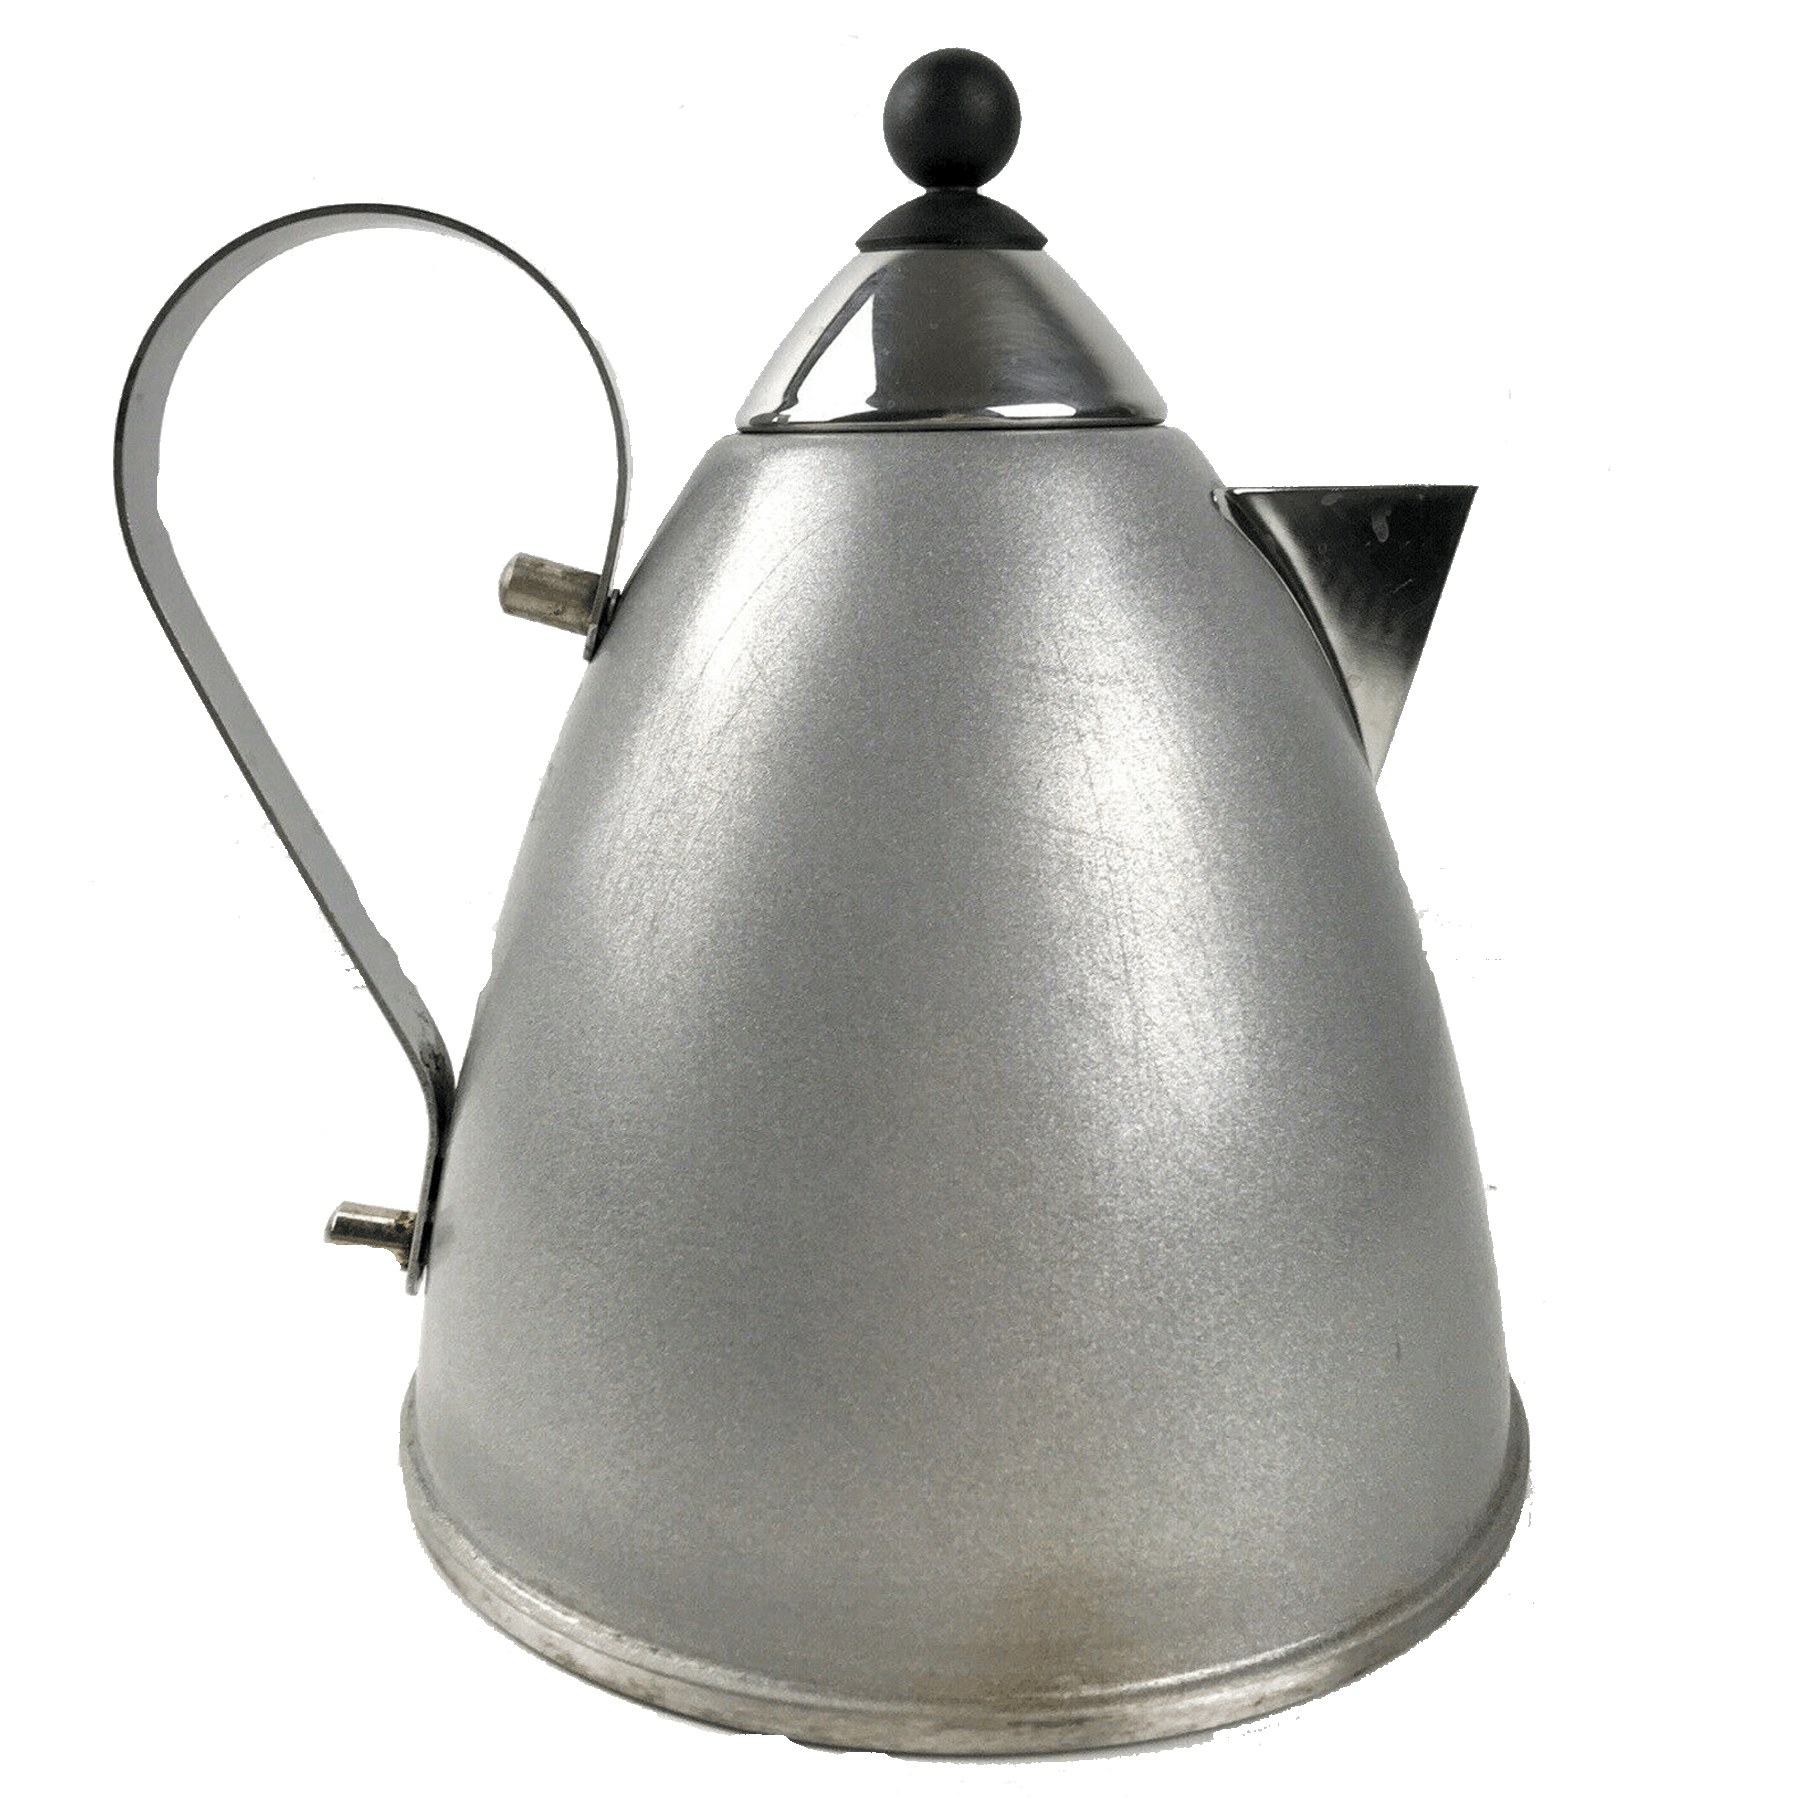 OGGI's Stainless Steel Tea Kettle - The Peppermill